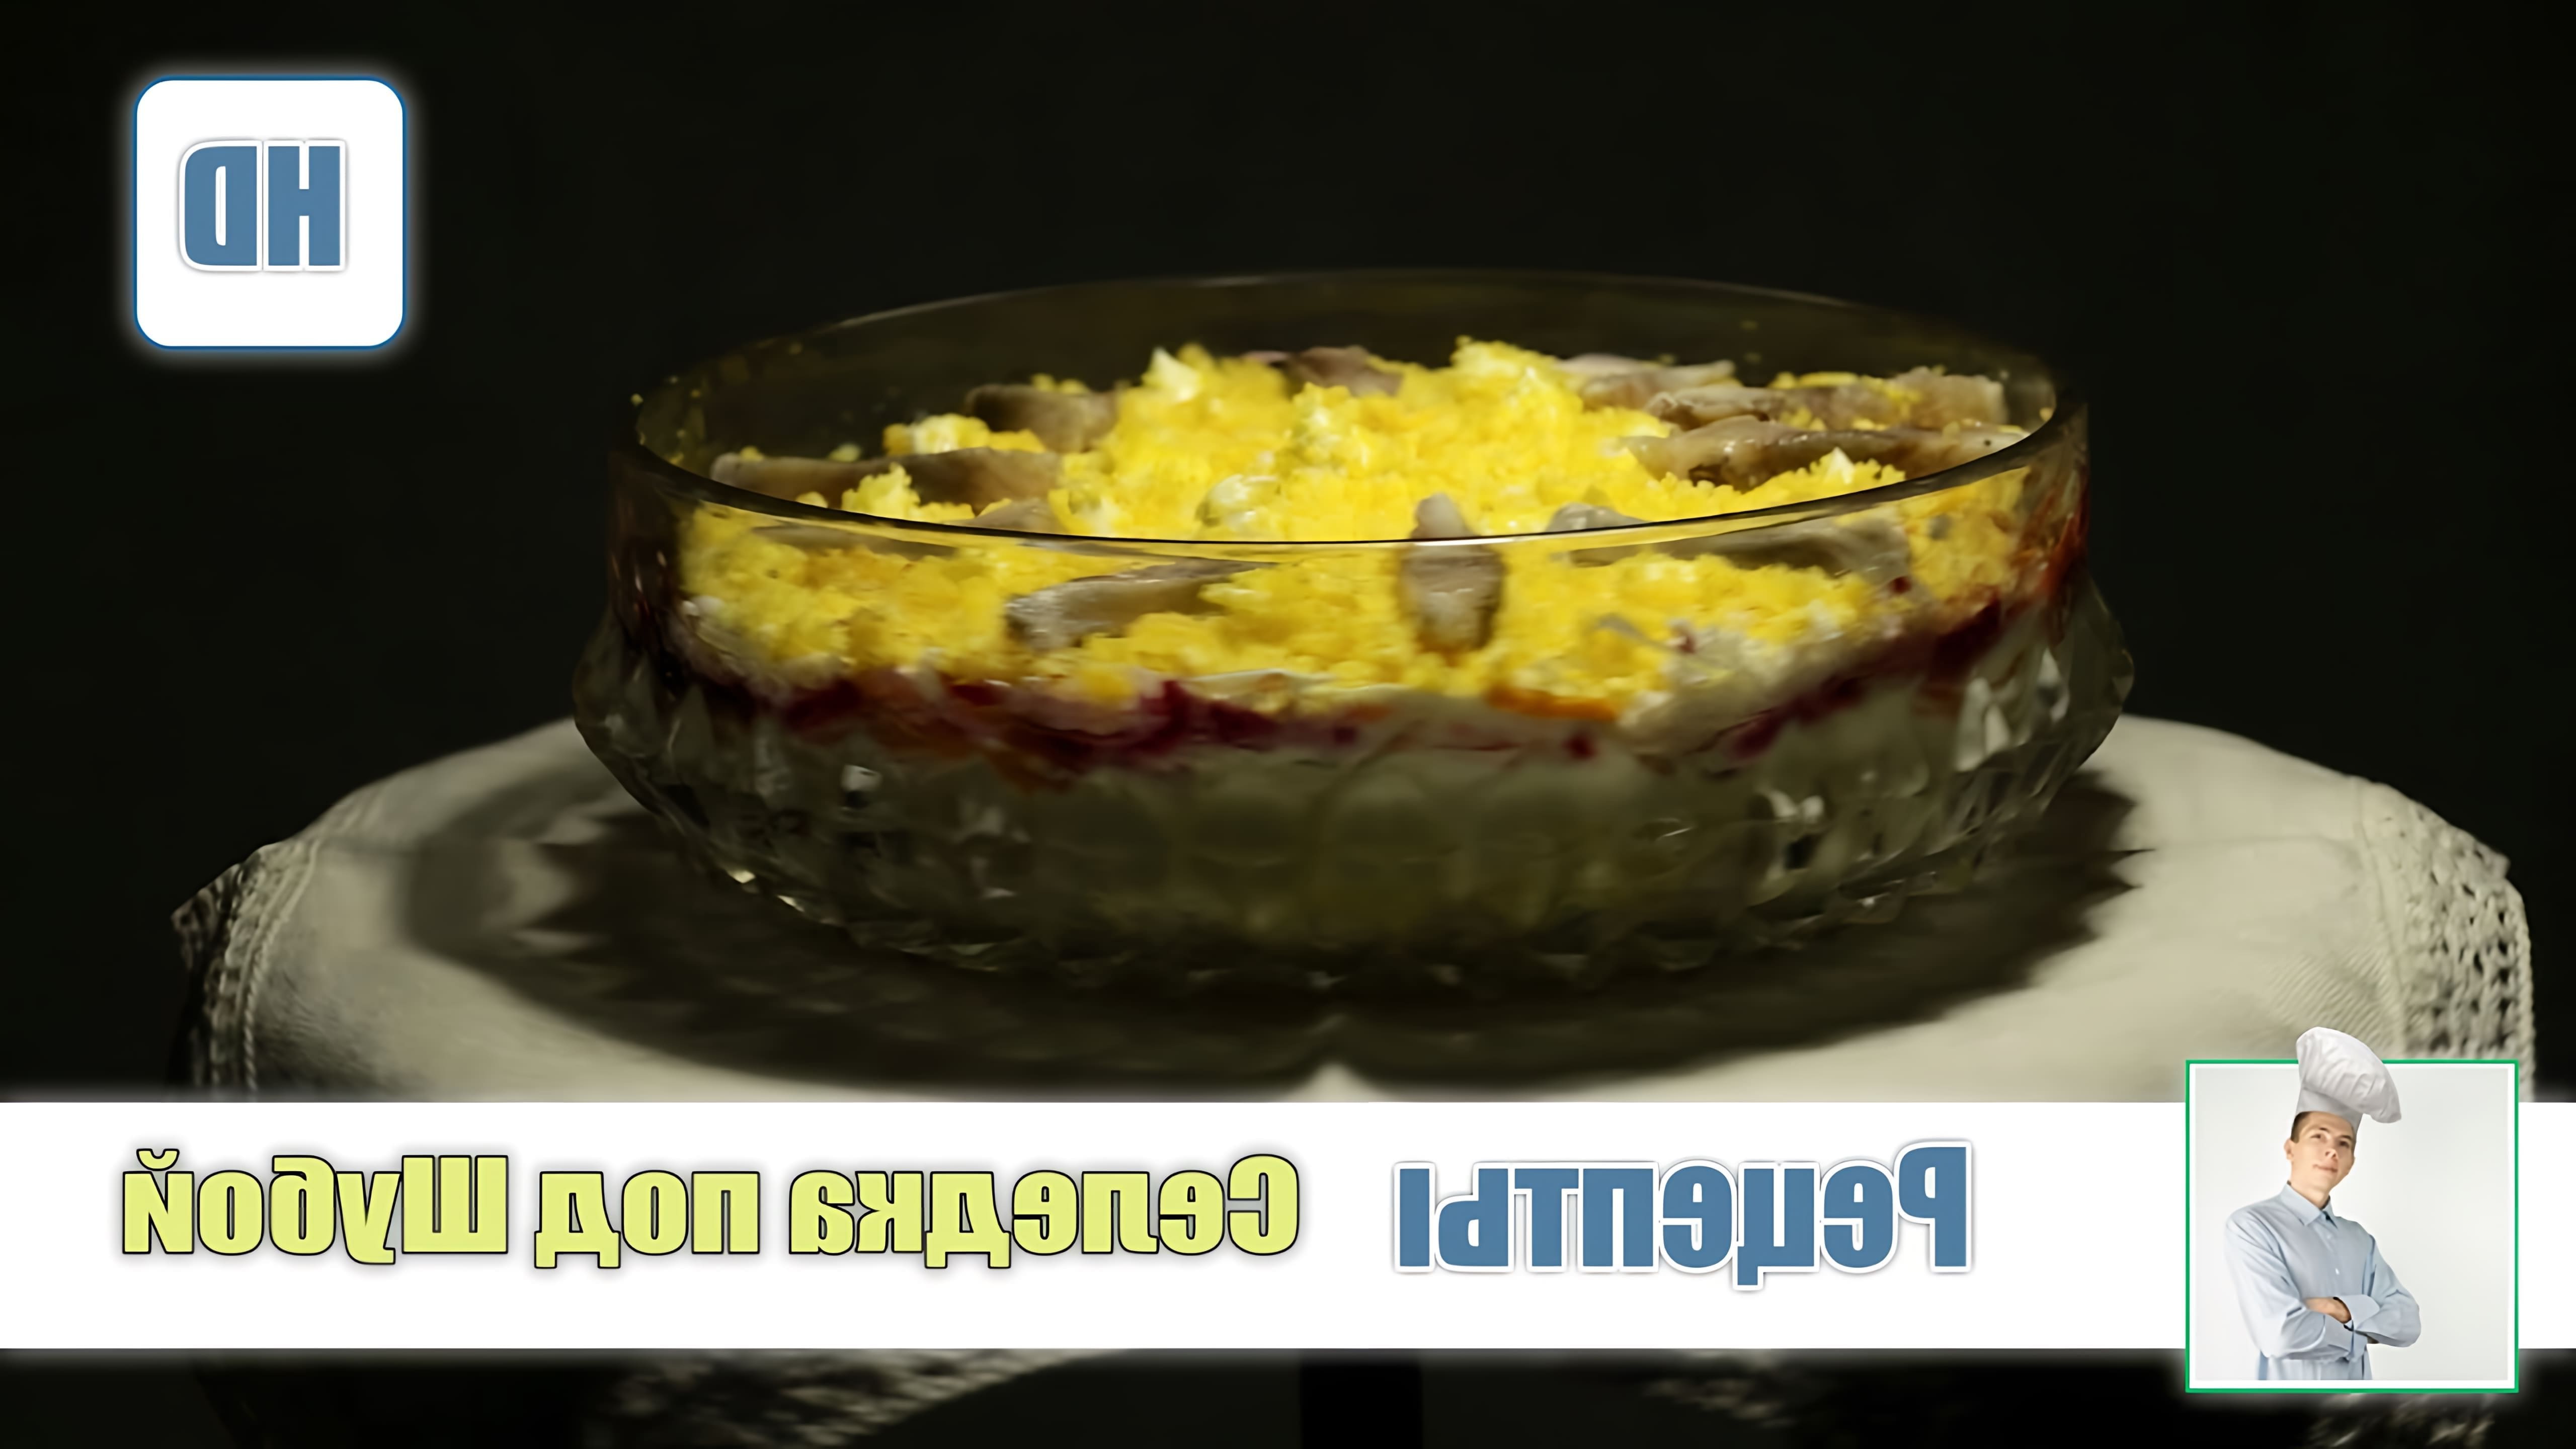 В этом видео демонстрируется рецепт приготовления селедки под шубой, одного из главных праздничных блюд